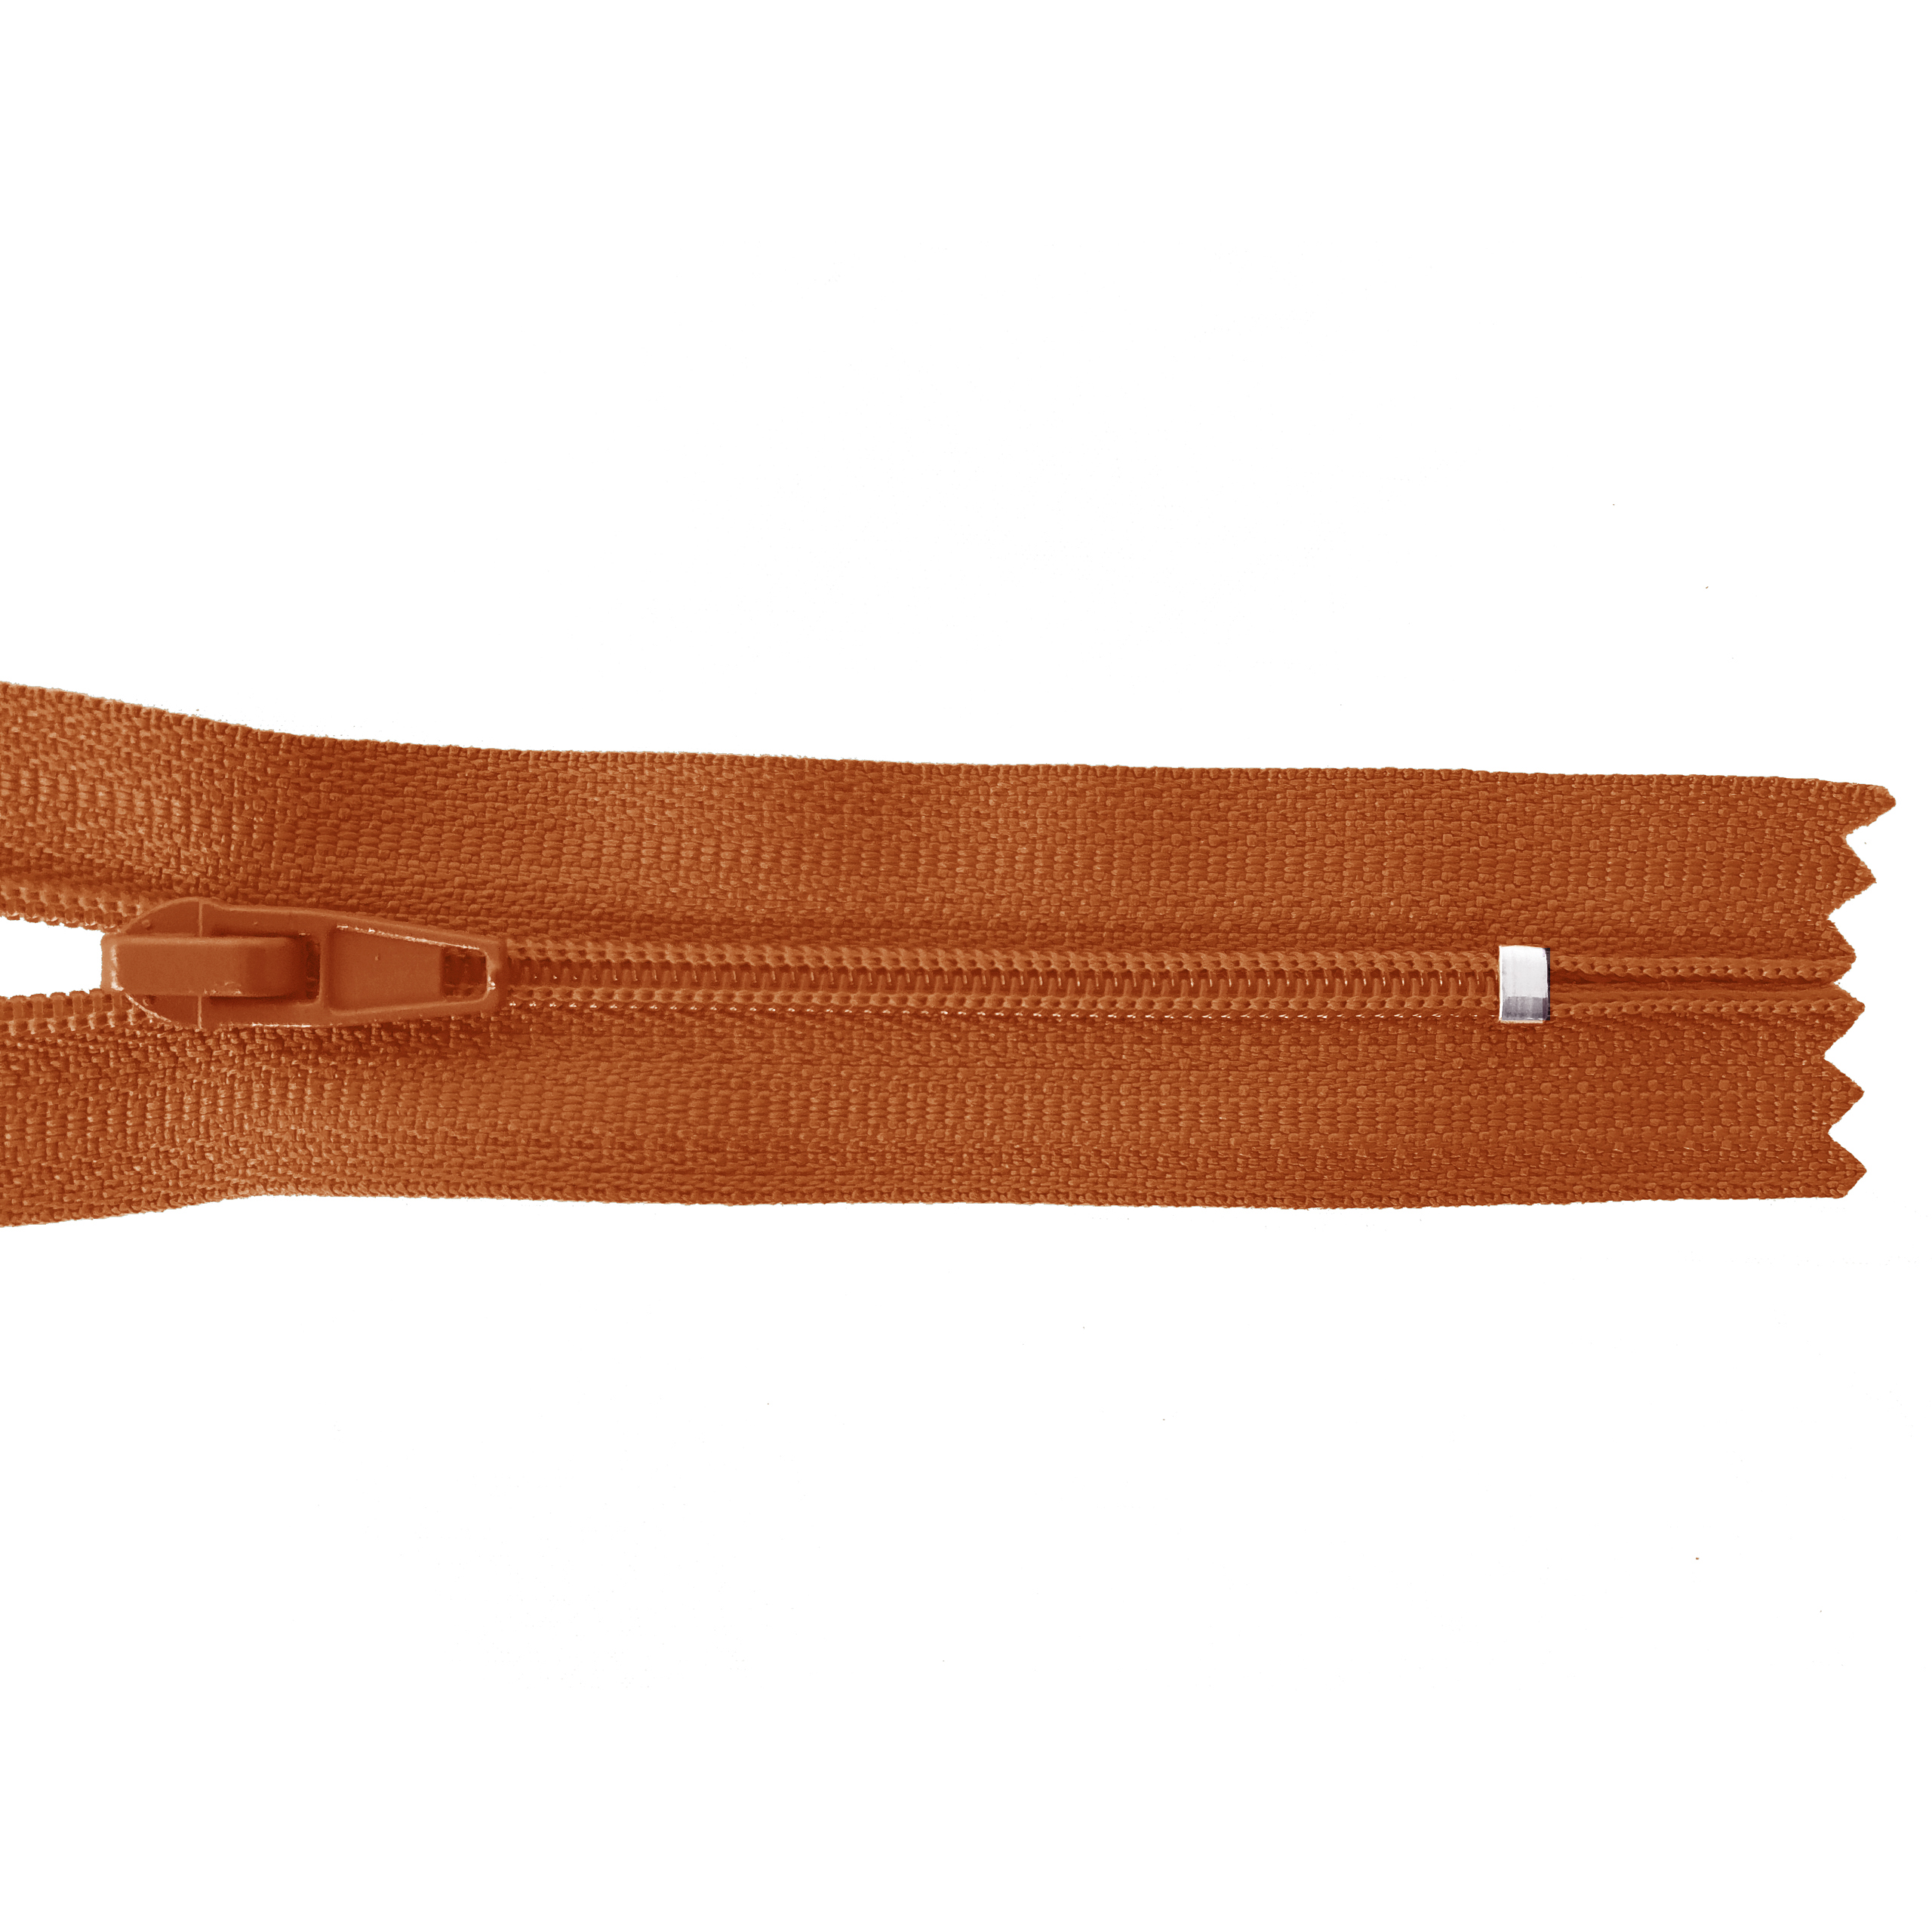 Reißverschluss 20cm, nicht teilbar, PES-Spirale fein, bräunlich-orange, hochwertiger Marken-Reißverschluss von Rubi/Barcelona